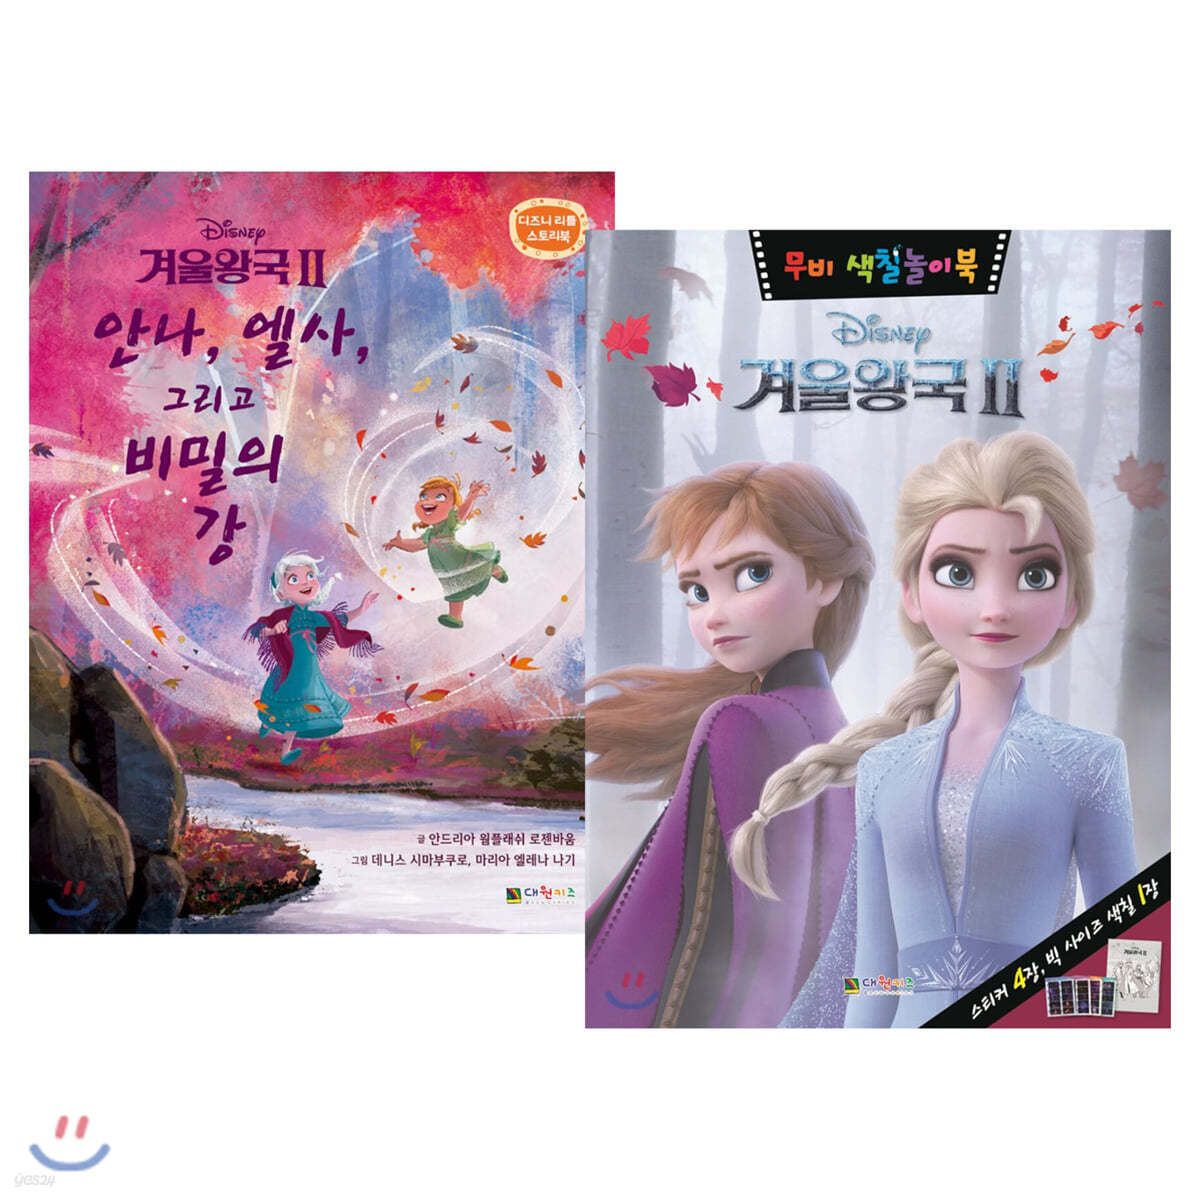 디즈니 겨울왕국 2 리틀 스토리북 + 무비 색칠놀이북